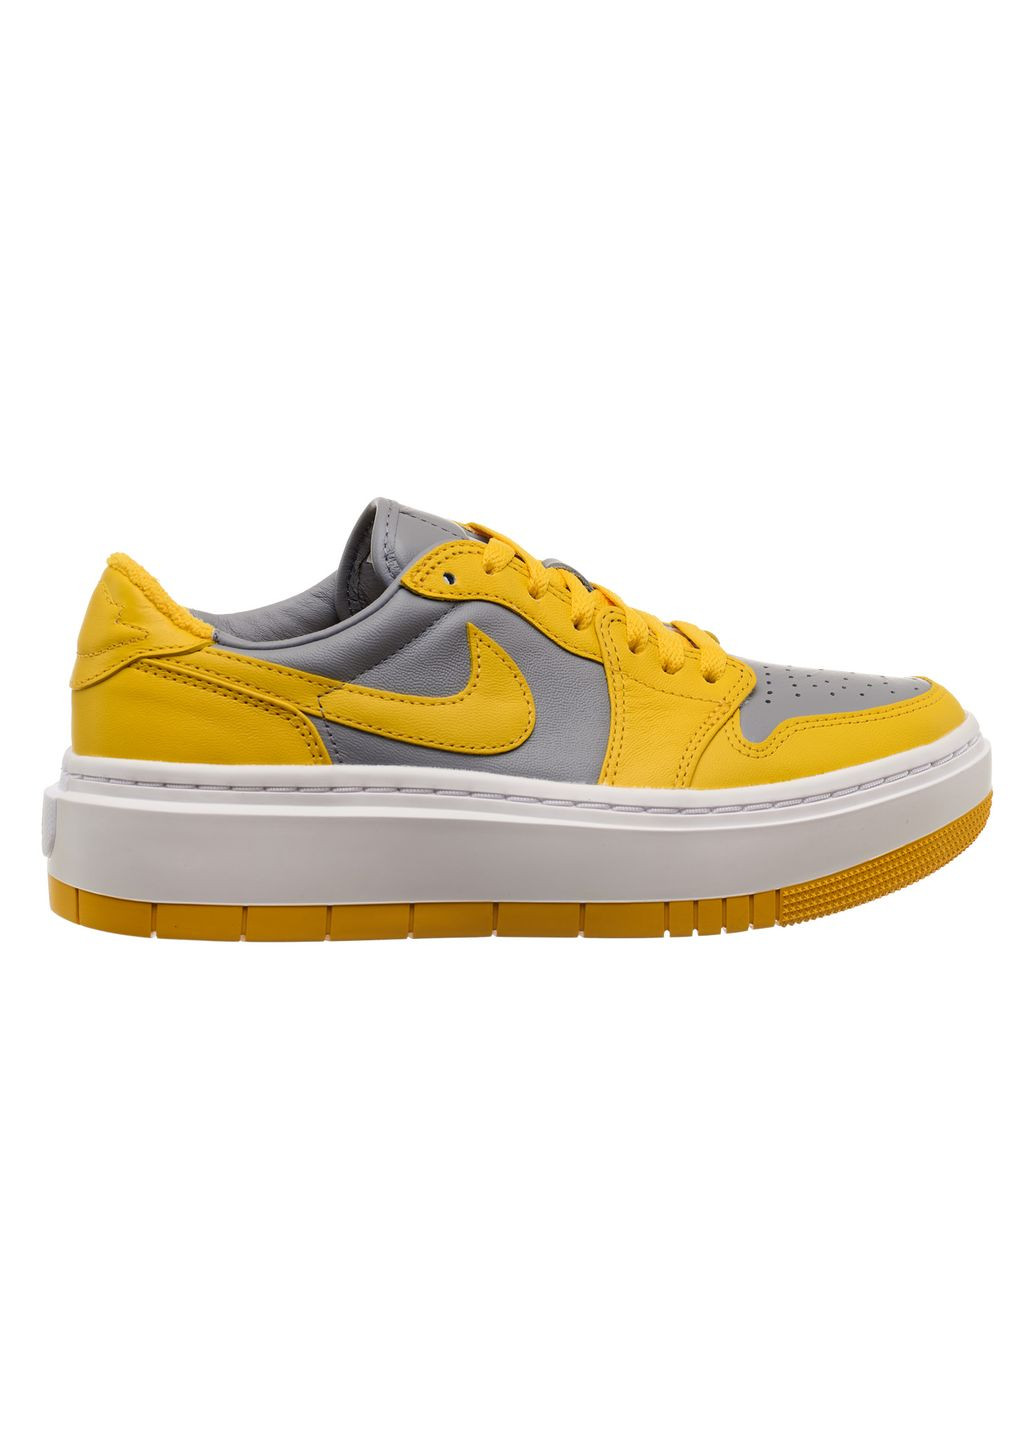 Желтые демисезонные кроссовки женские 1 low elevate yellow grey (dh7004-017) Jordan